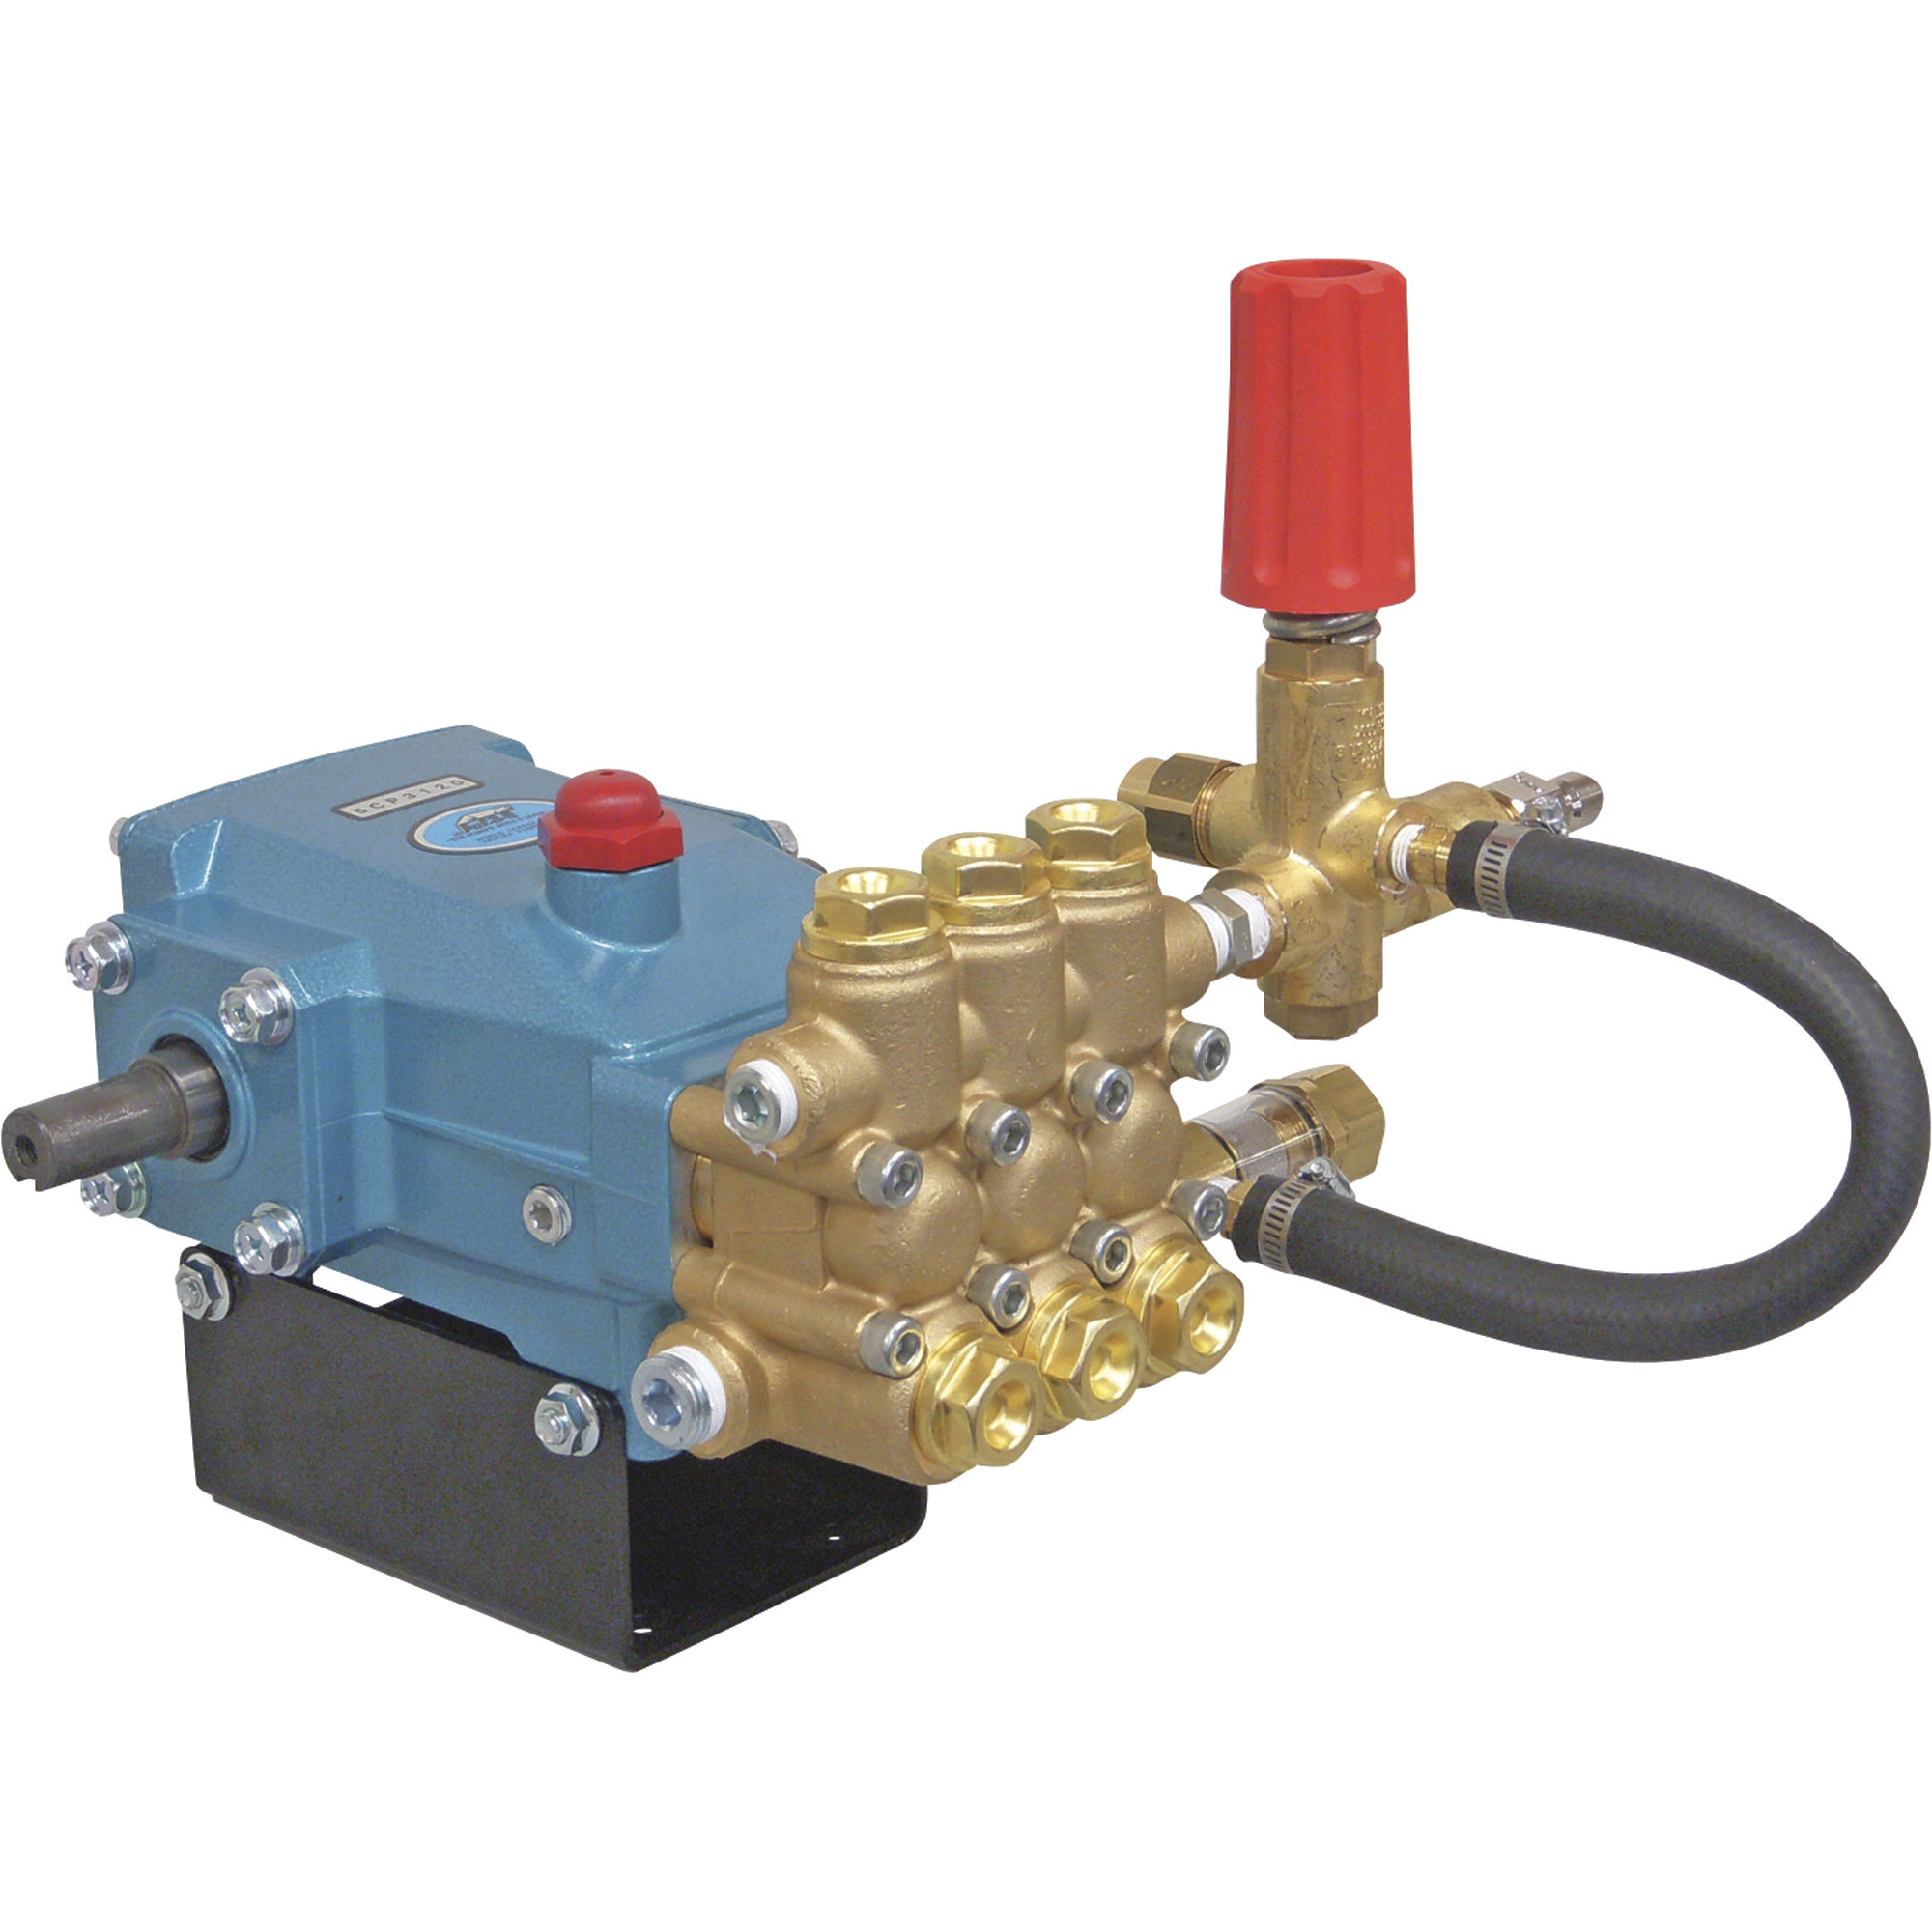 Cat Pumps Pressure Washer Pump, 3500 PSI, 4.5 GPM, Belt Drive, Model 5CP3120